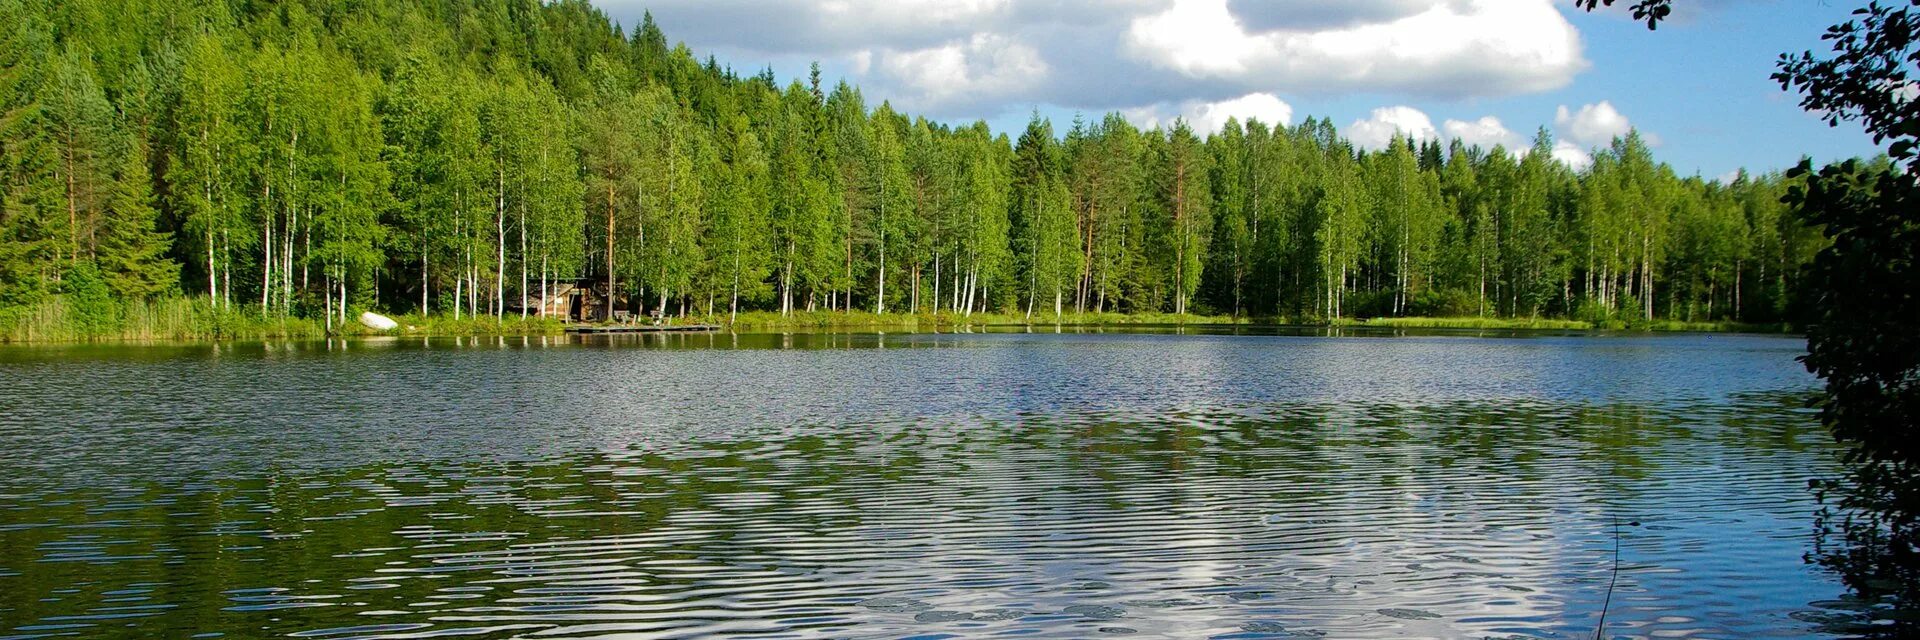 Какую страну называют страной 1000 озер. Финляндия тысяча озер. Финляндия Страна тысячи озер. Карелия 1000 озер. Финляндия Страна 1000 озер.